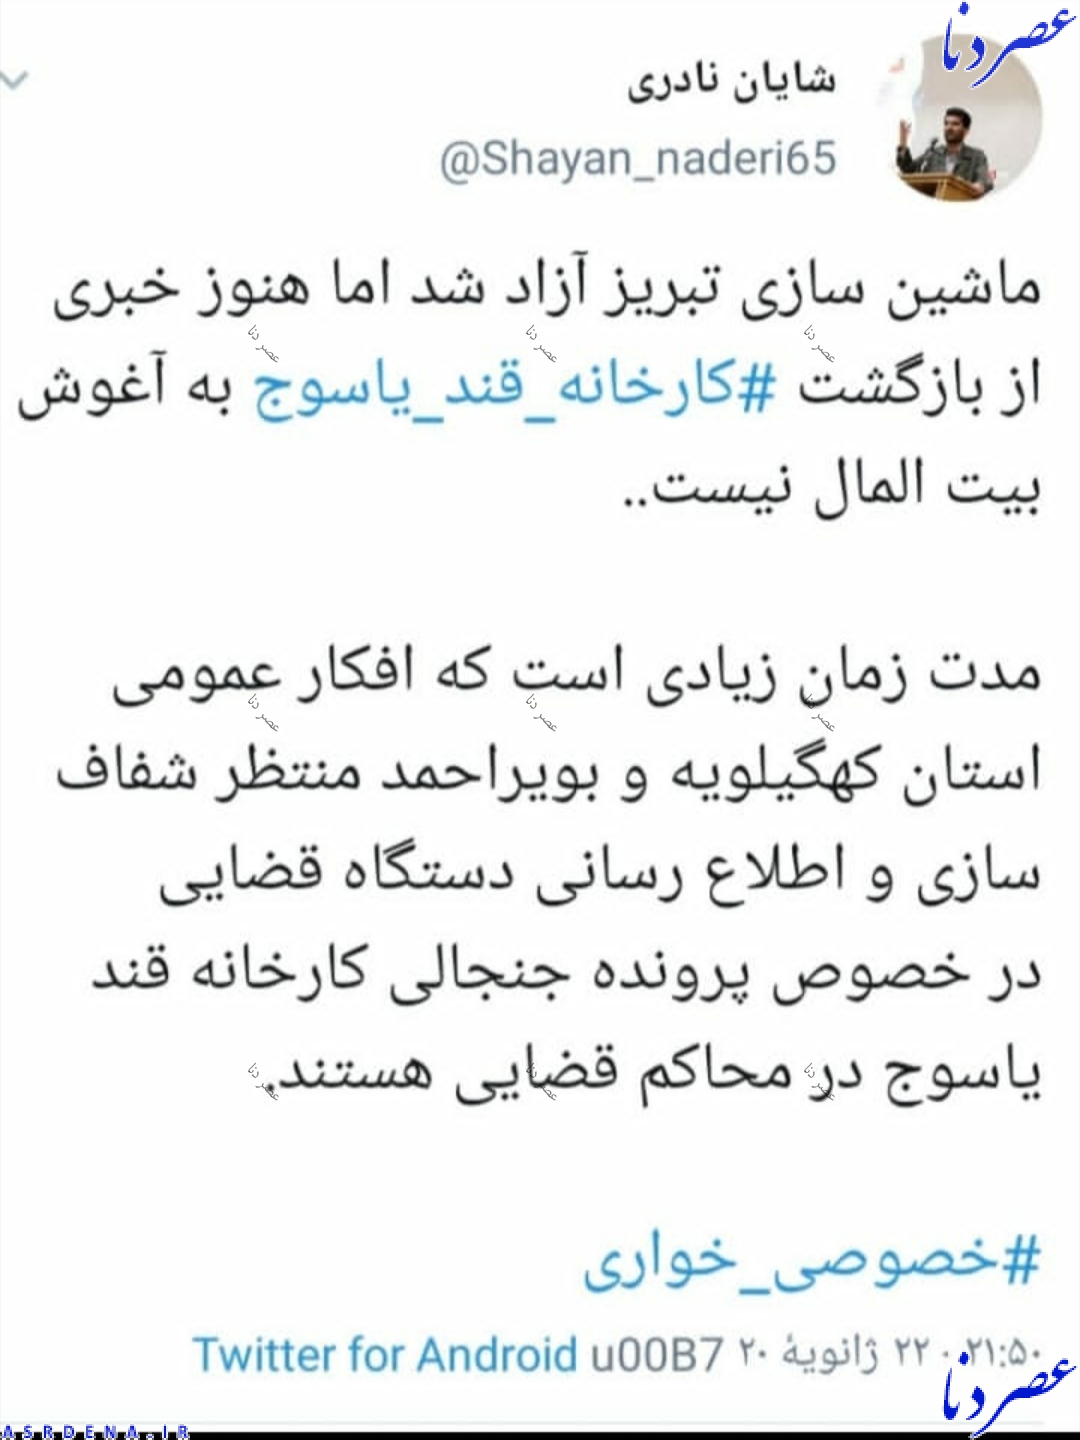 ماشین سازی تبریز آزاد شد ولی هنوز خبری از کارخانه قند یاسوج نیست!